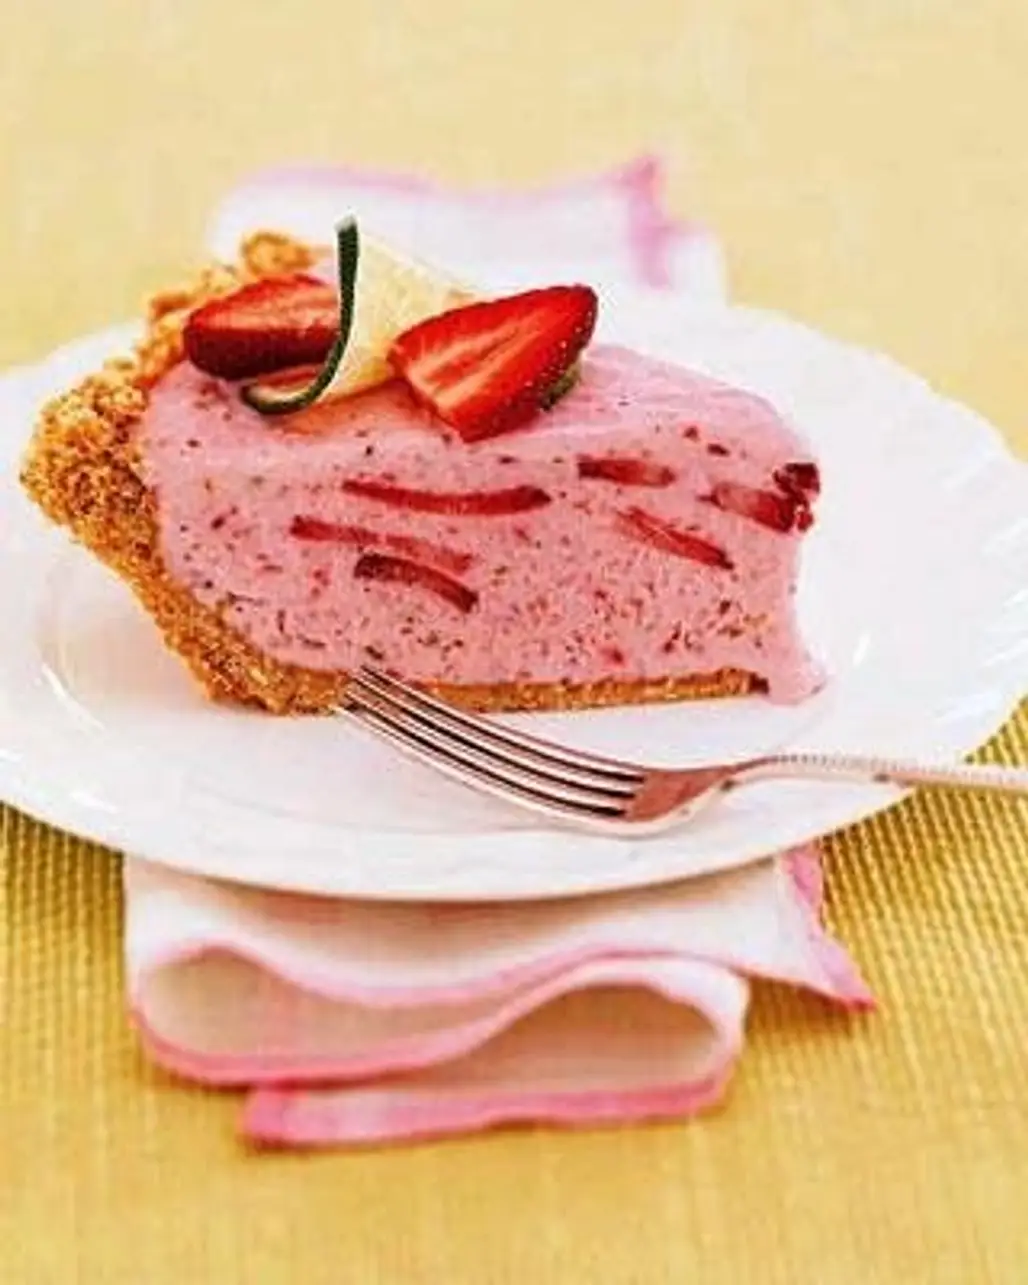 Frozen Strawberry Margarita Pie